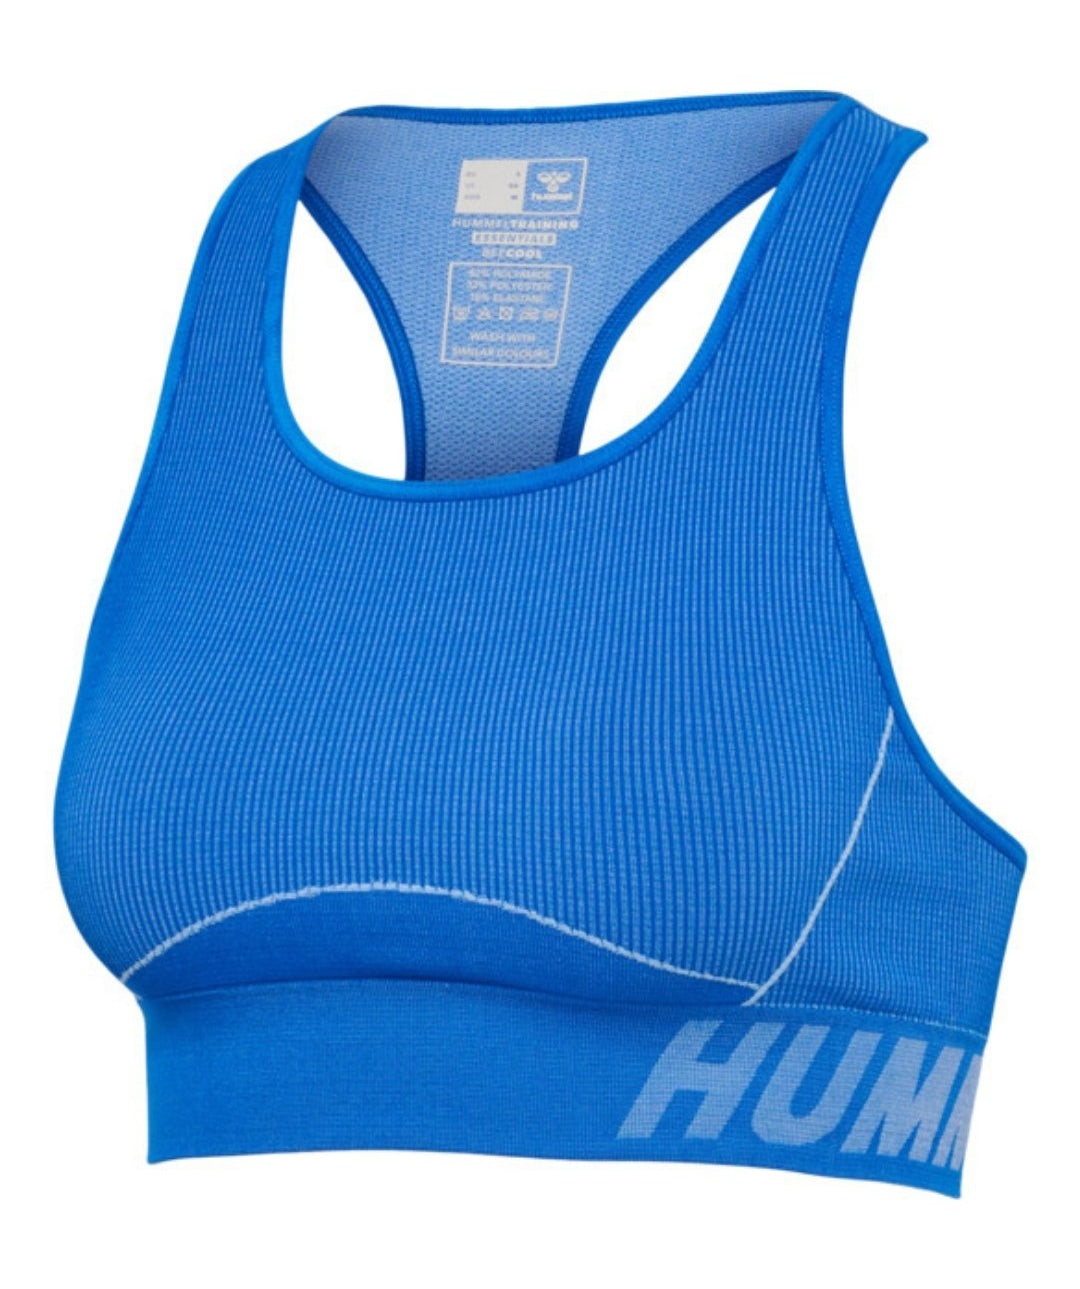 Hummel® - Christel Sports Top (Placid Blue/Lapis Blue Melange)